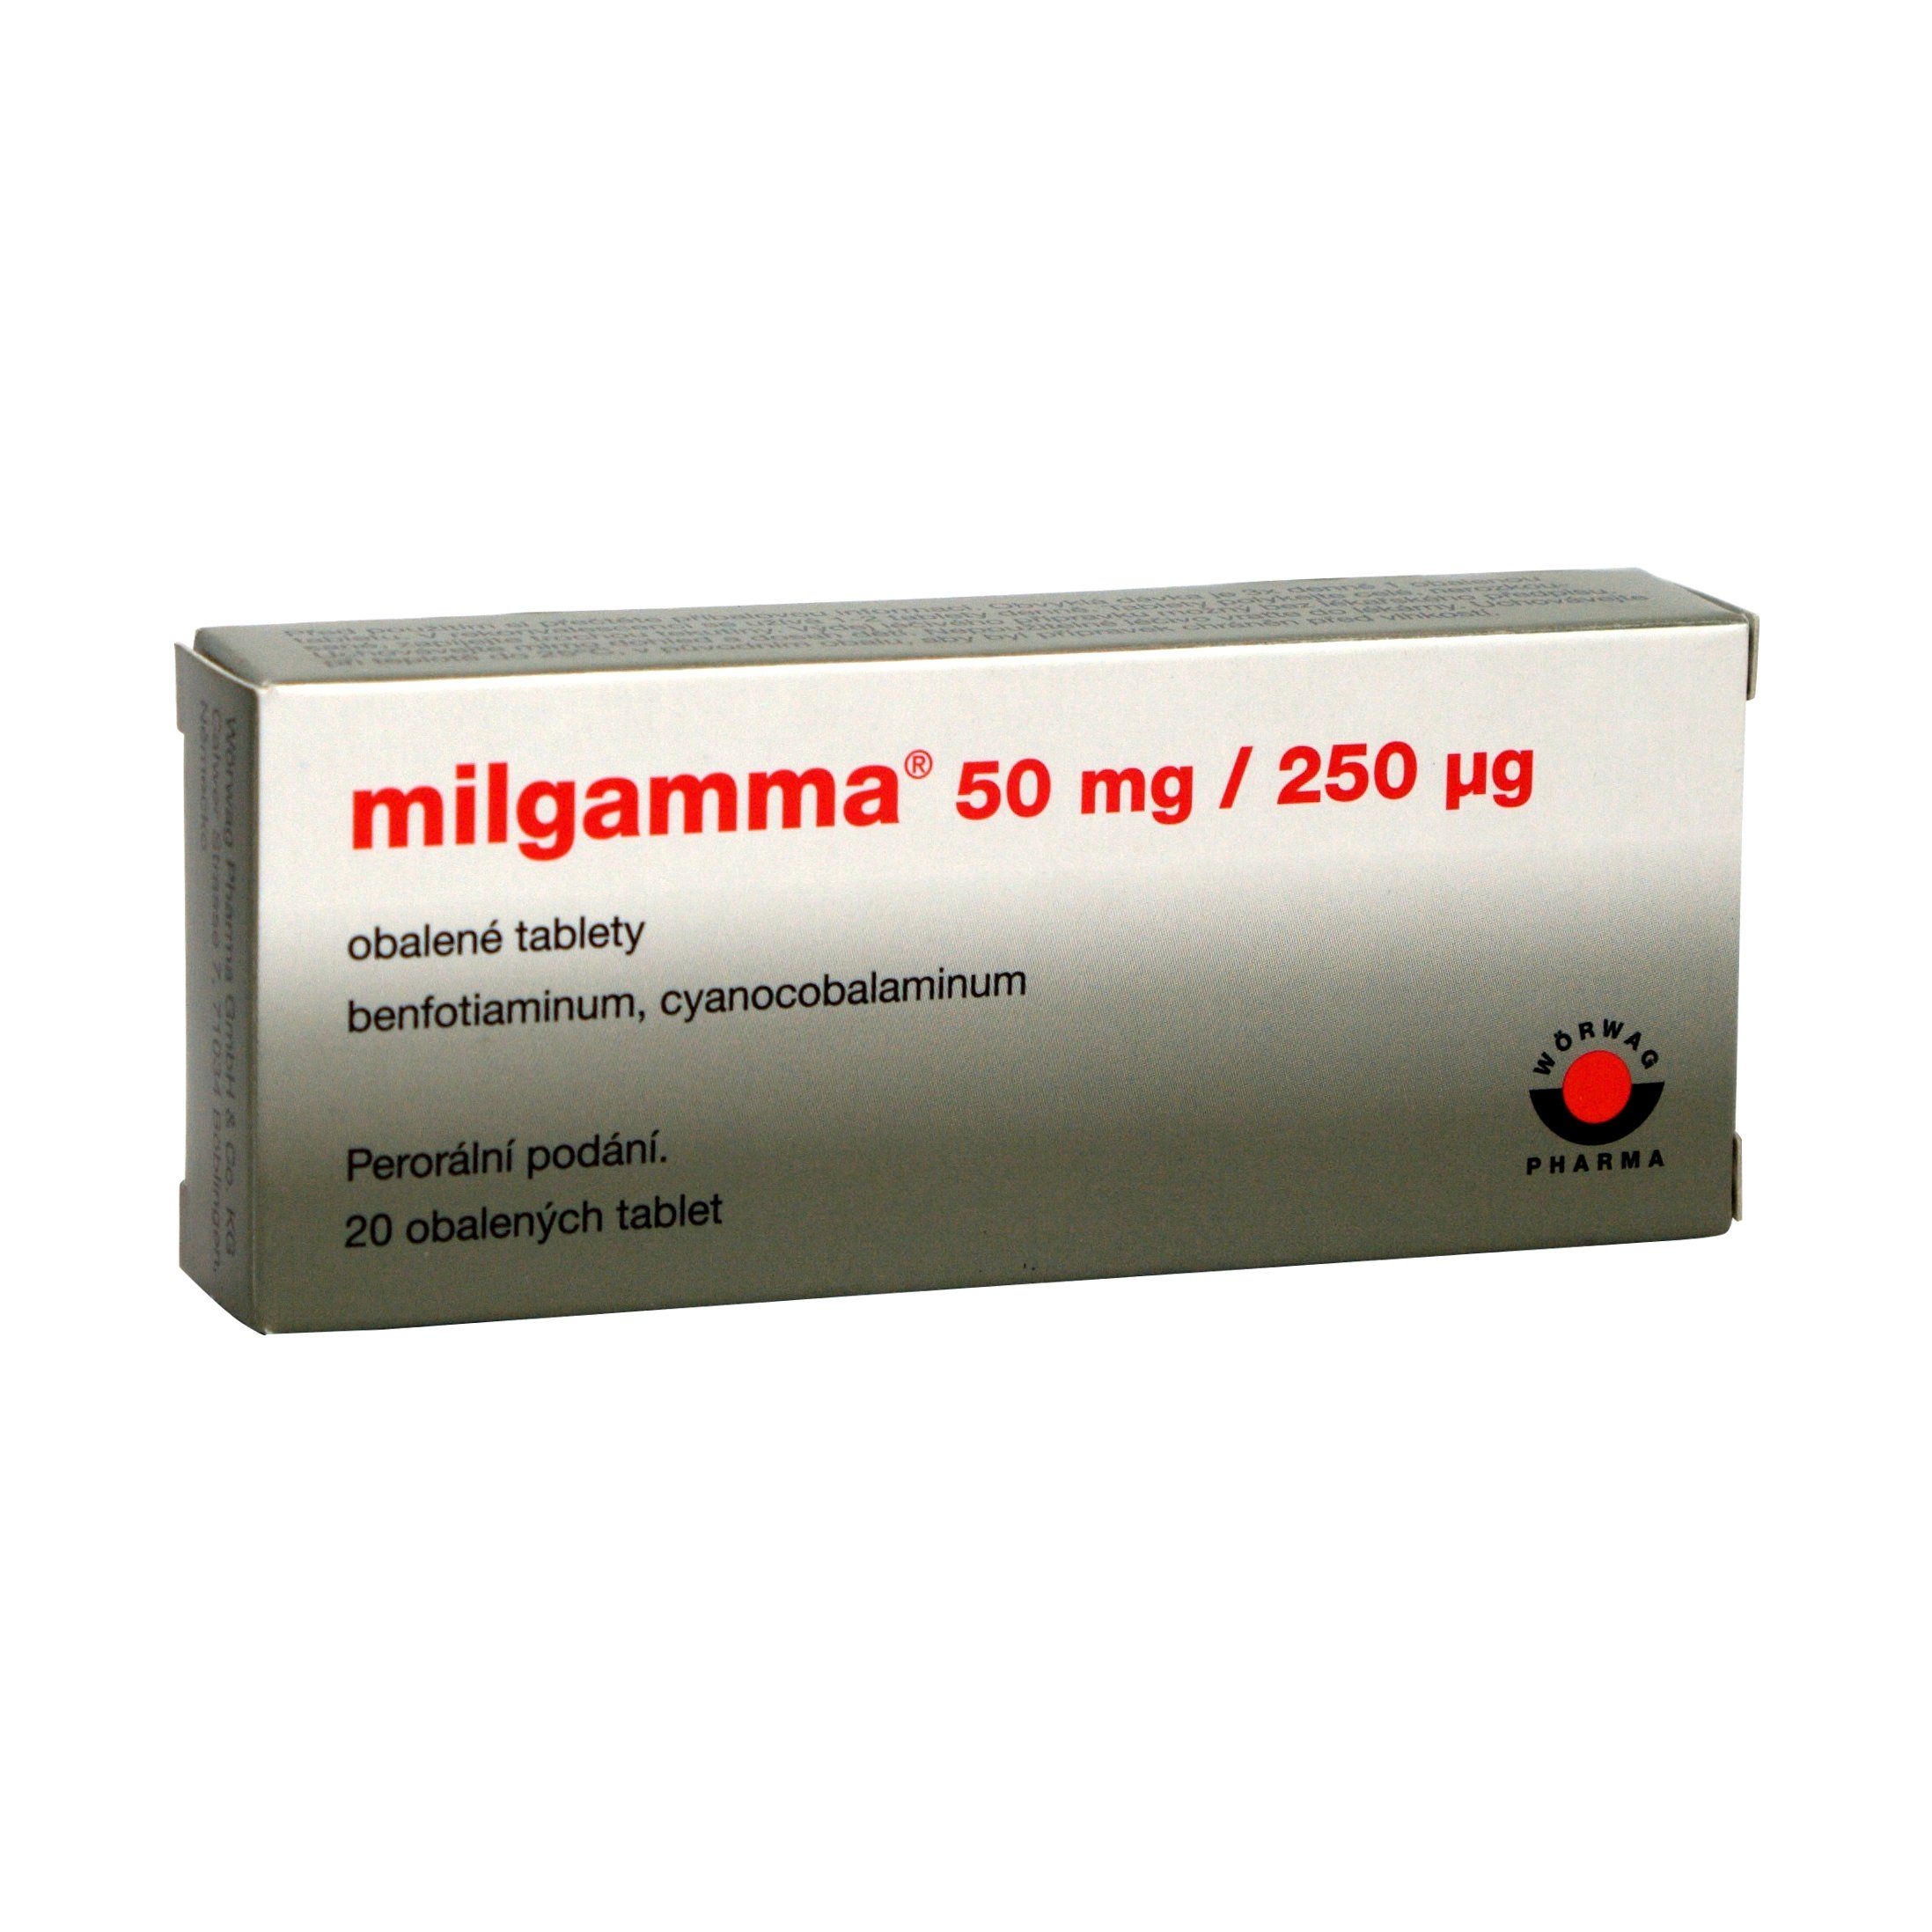 Milgamma 50 mg/250 μg 20 obalených tablet Milgamma